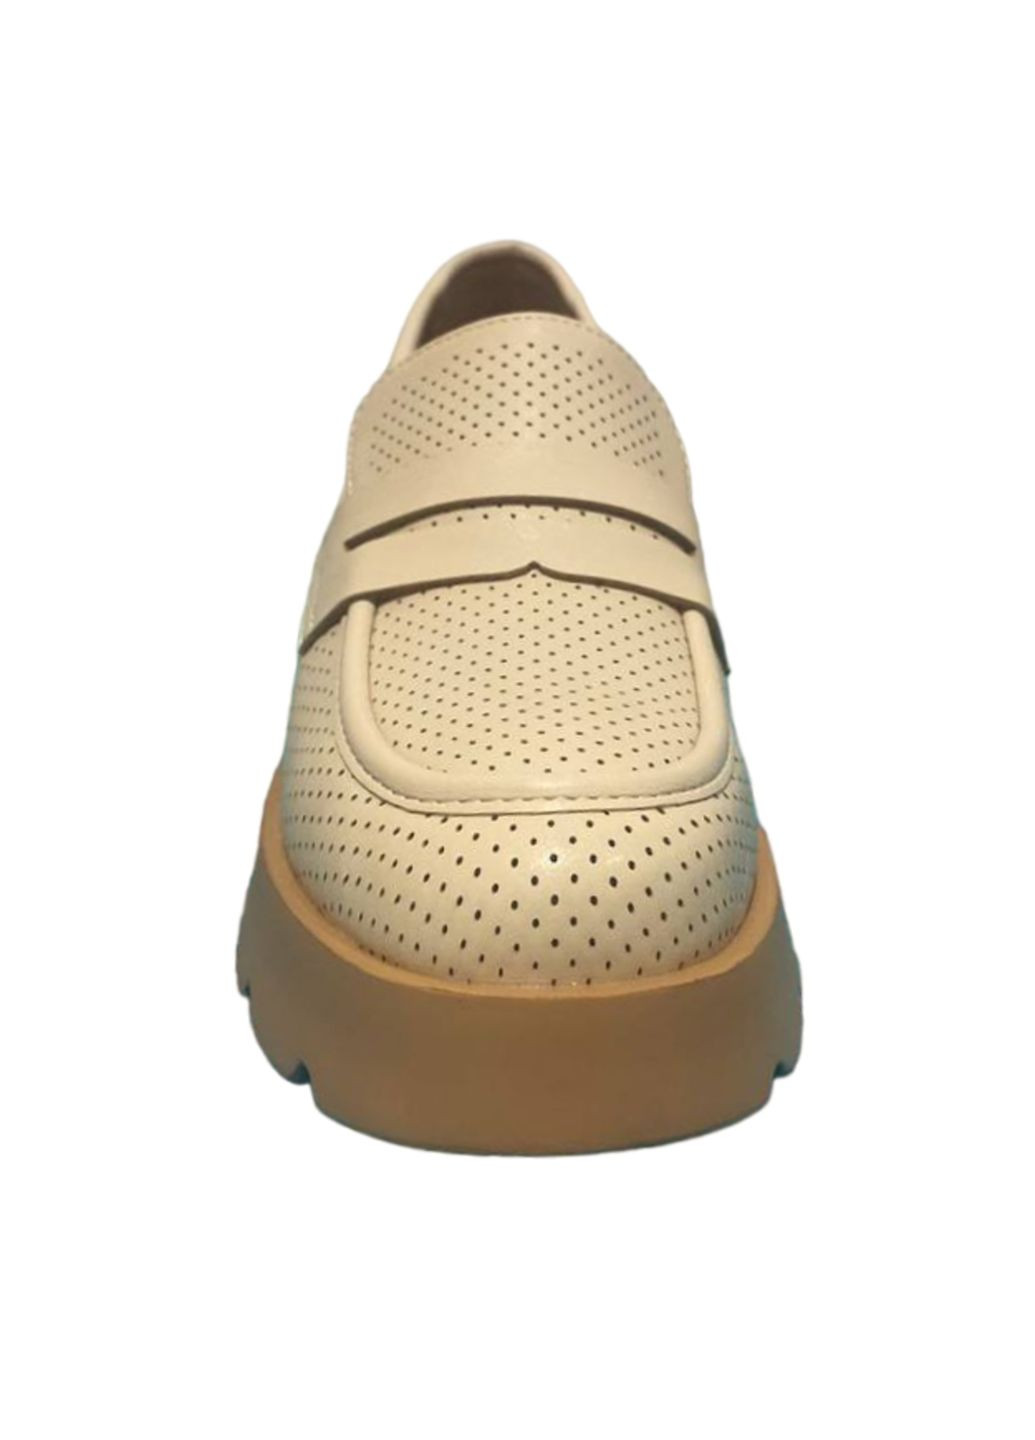 Демисезонные повседневные туфли Butigo на среднем каблуке